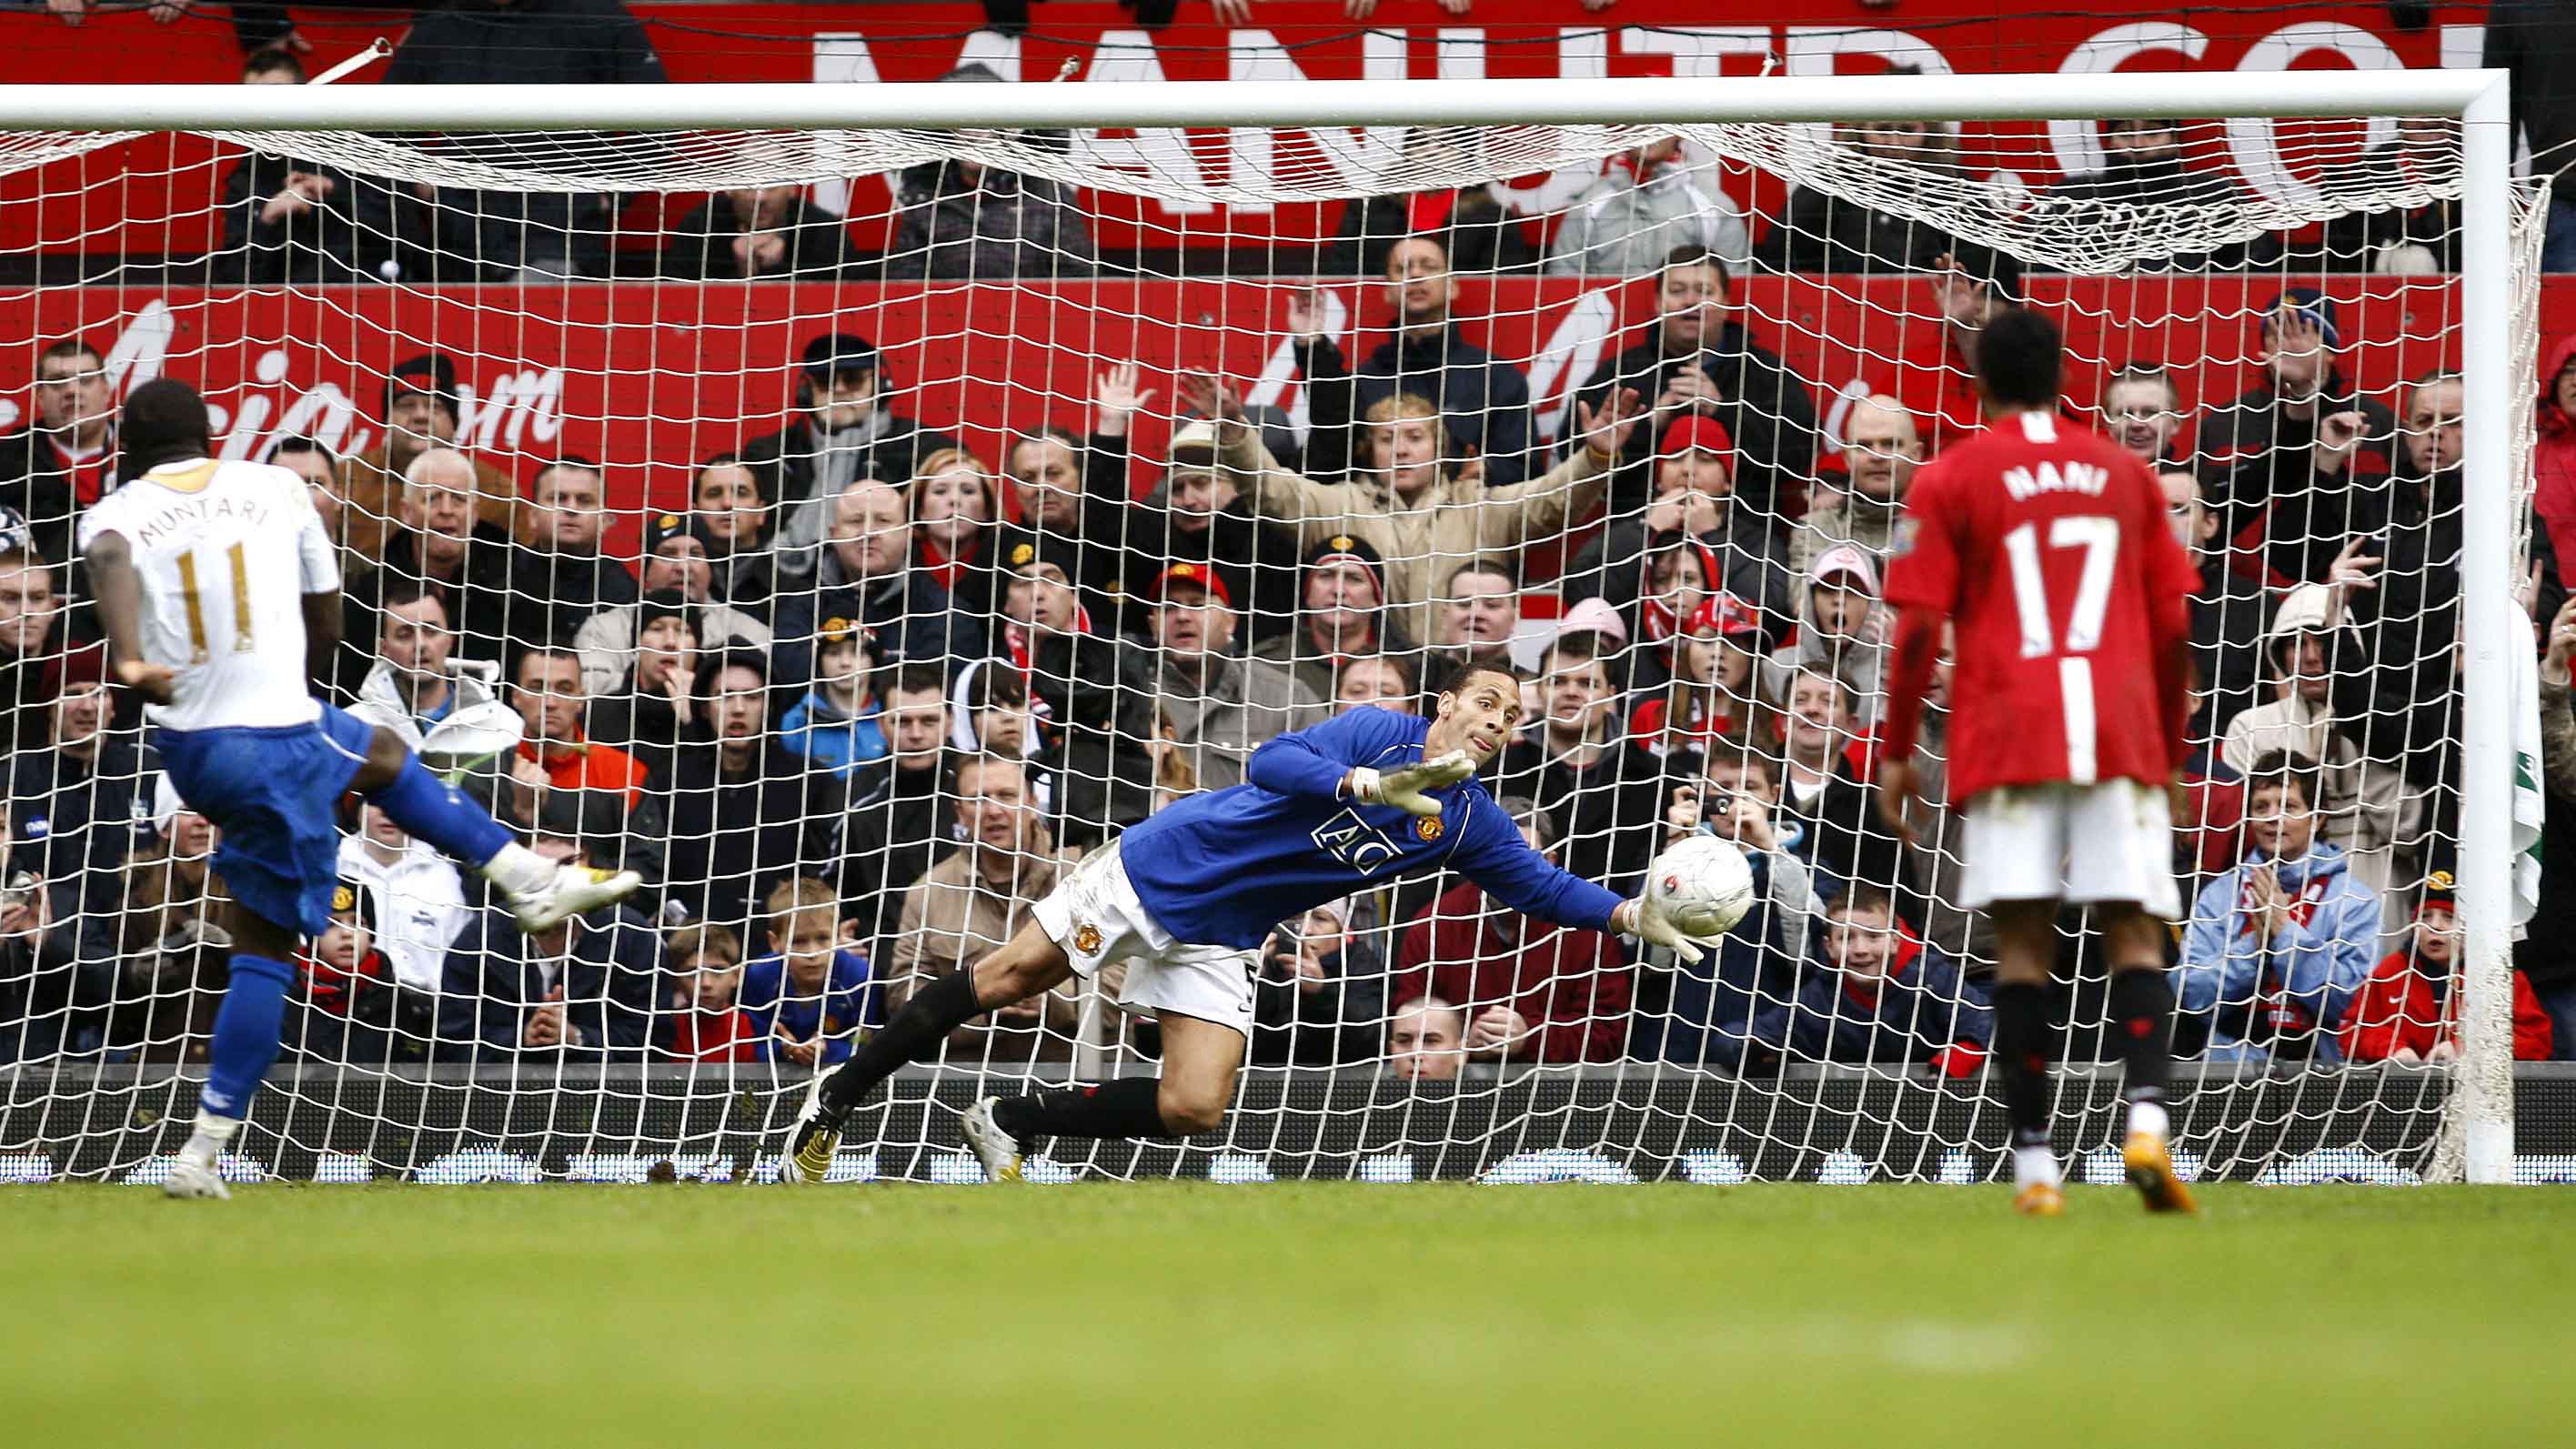 Rio Ferdinand, Manchester United: Los ‘Red Devils’ enfrentaban al Portsmouth en la FA Cup, en 2008. Con Edwin van der Saar lesionado y el suplente Tomasz Kuszczak expulsado, Ferdinand se puso los guantes.